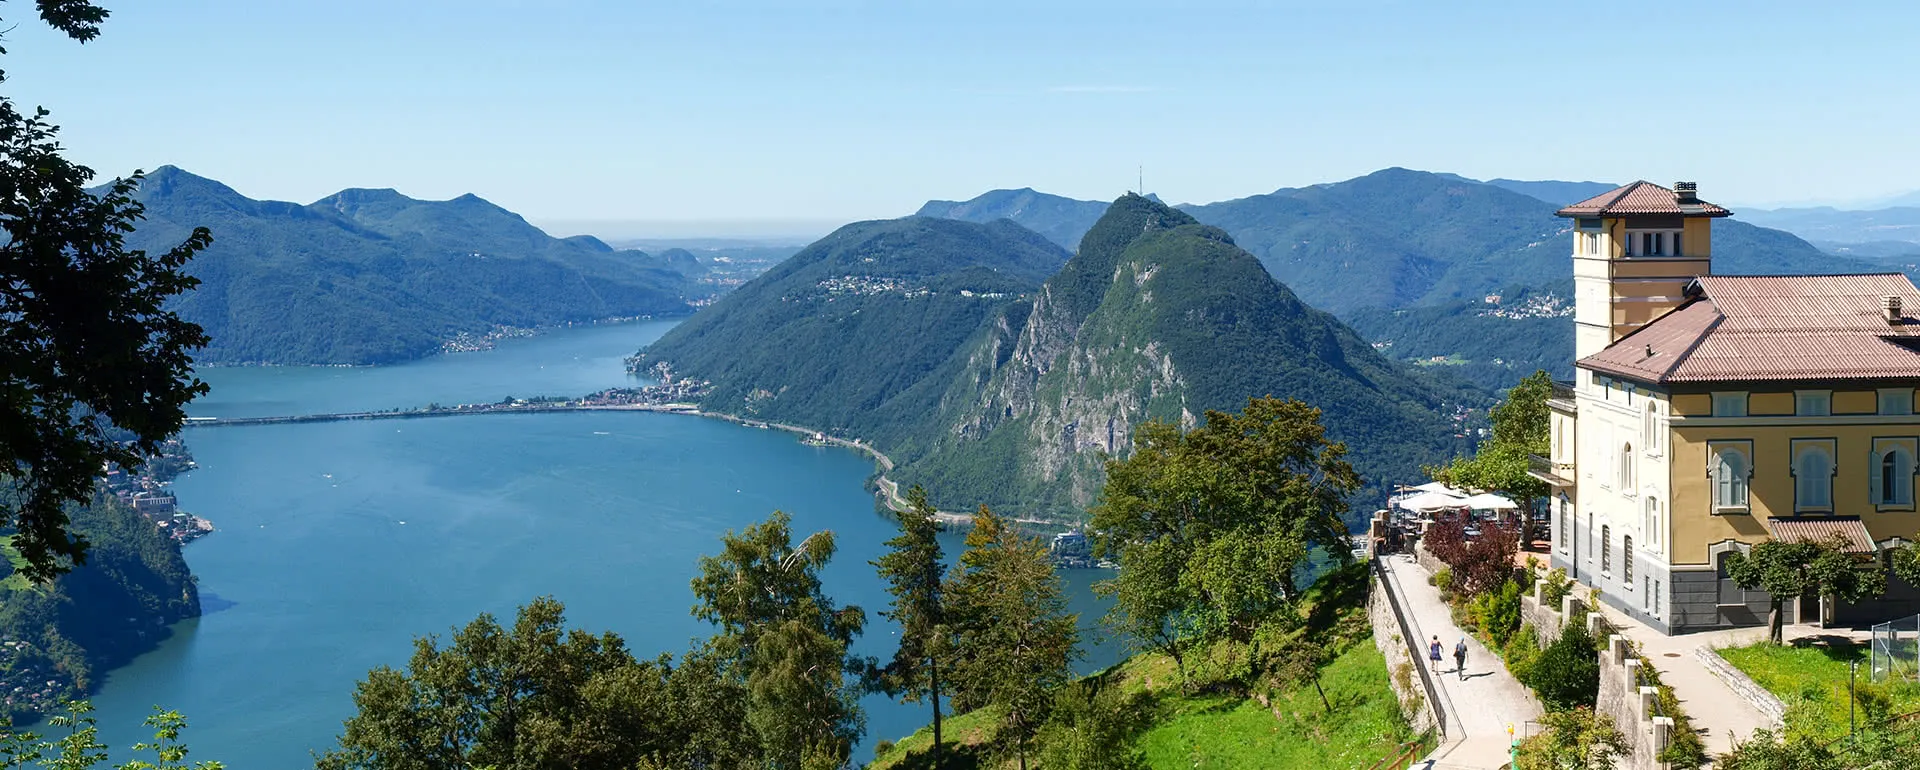 Lugano panorama image